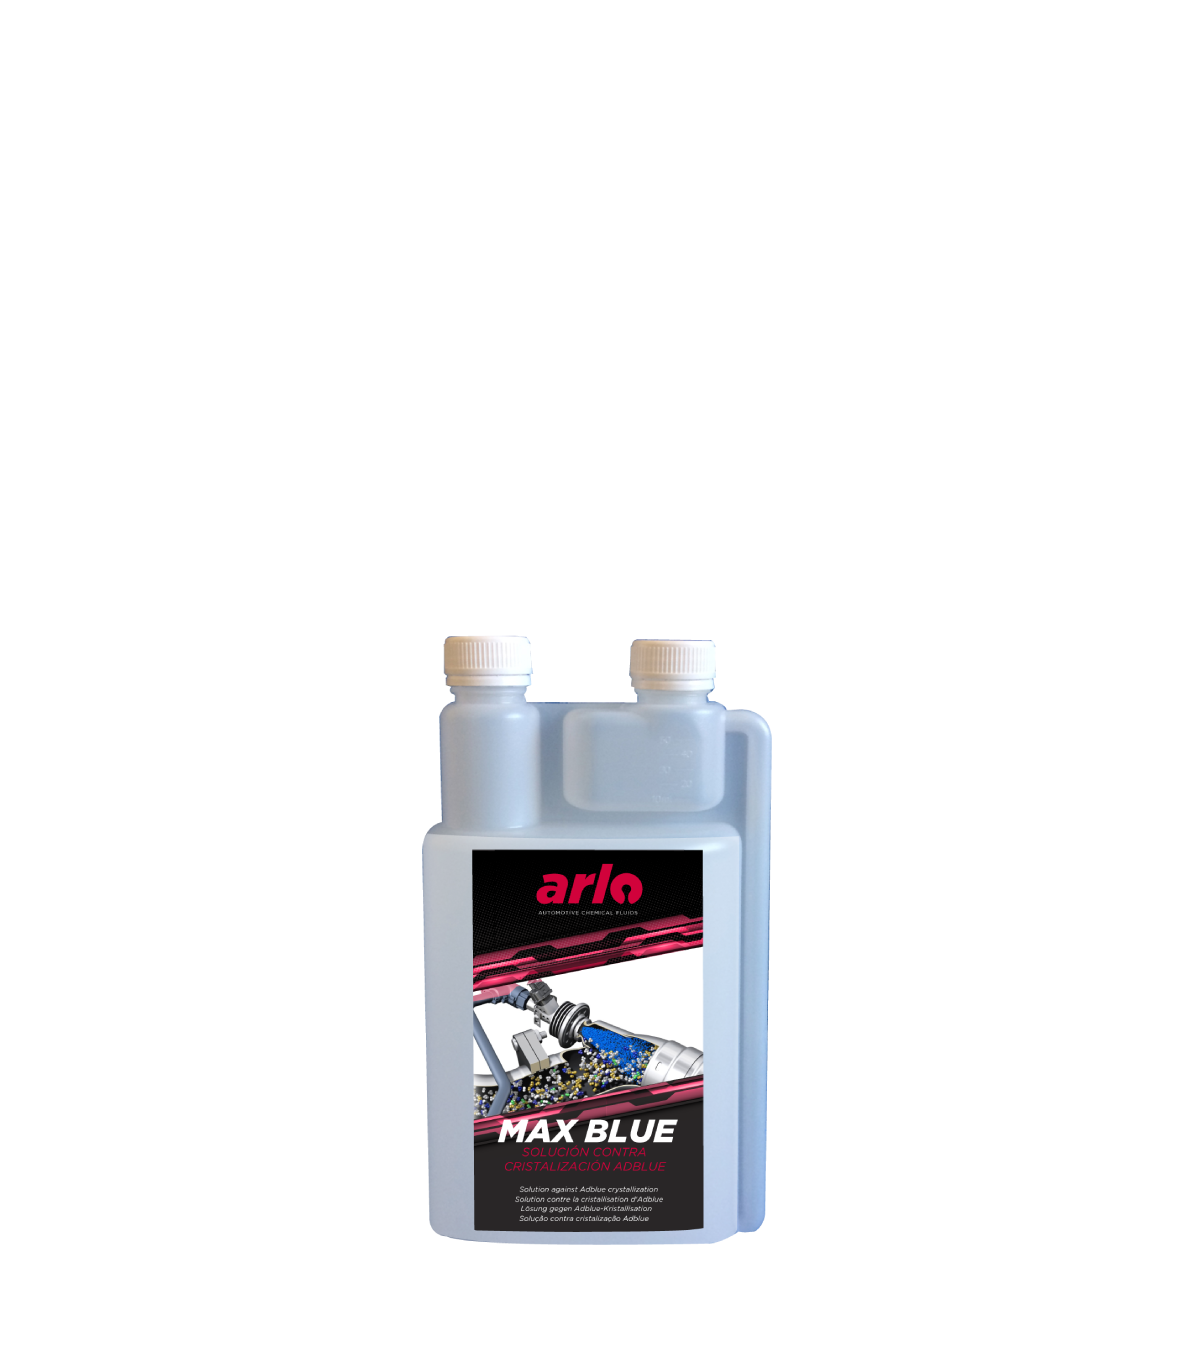 Solución contra la cristalización de AD BLUE en vehículos diesel. 250 ml 